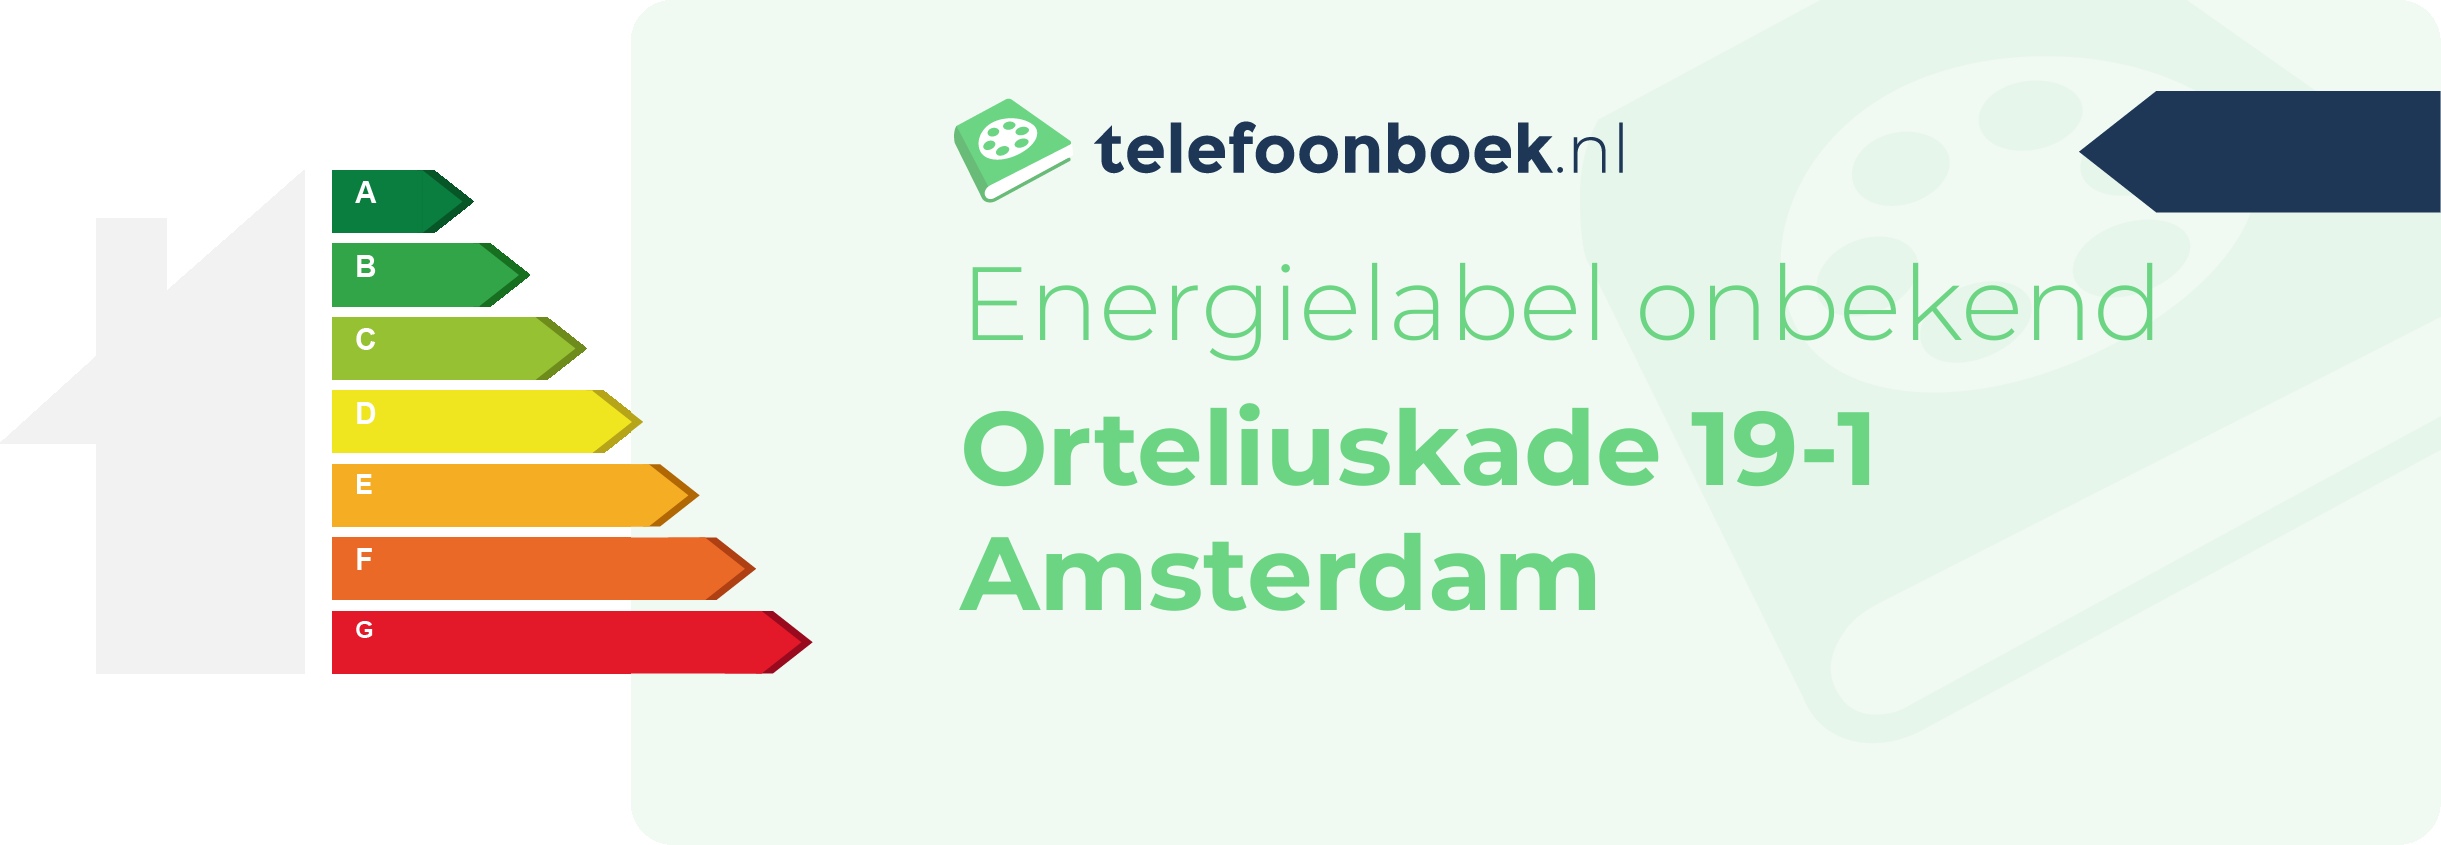 Energielabel Orteliuskade 19-1 Amsterdam